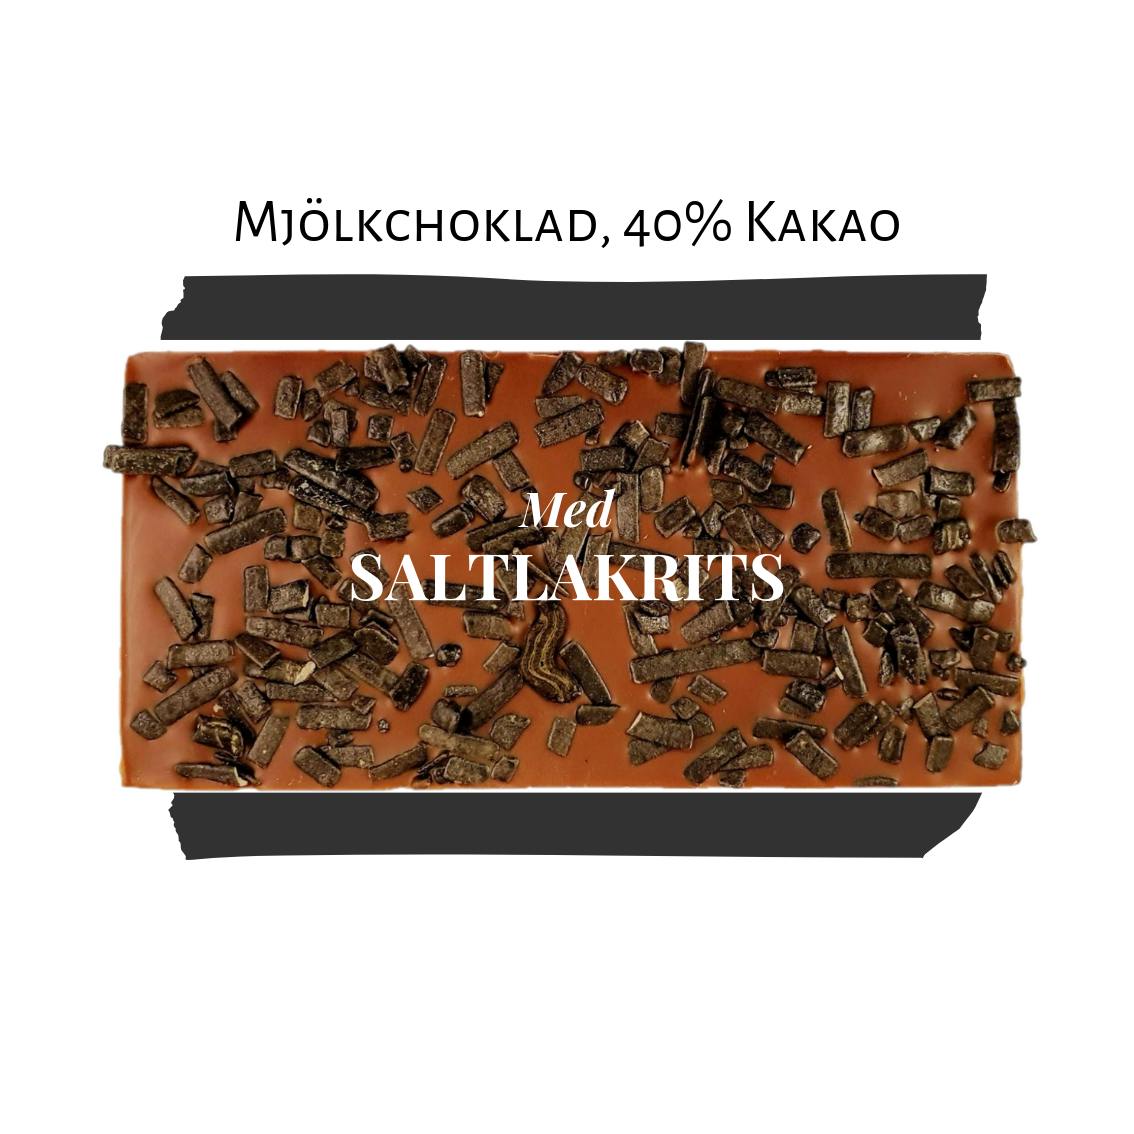 40% Mjölkchoklad - Saltlakrits (x 10st)